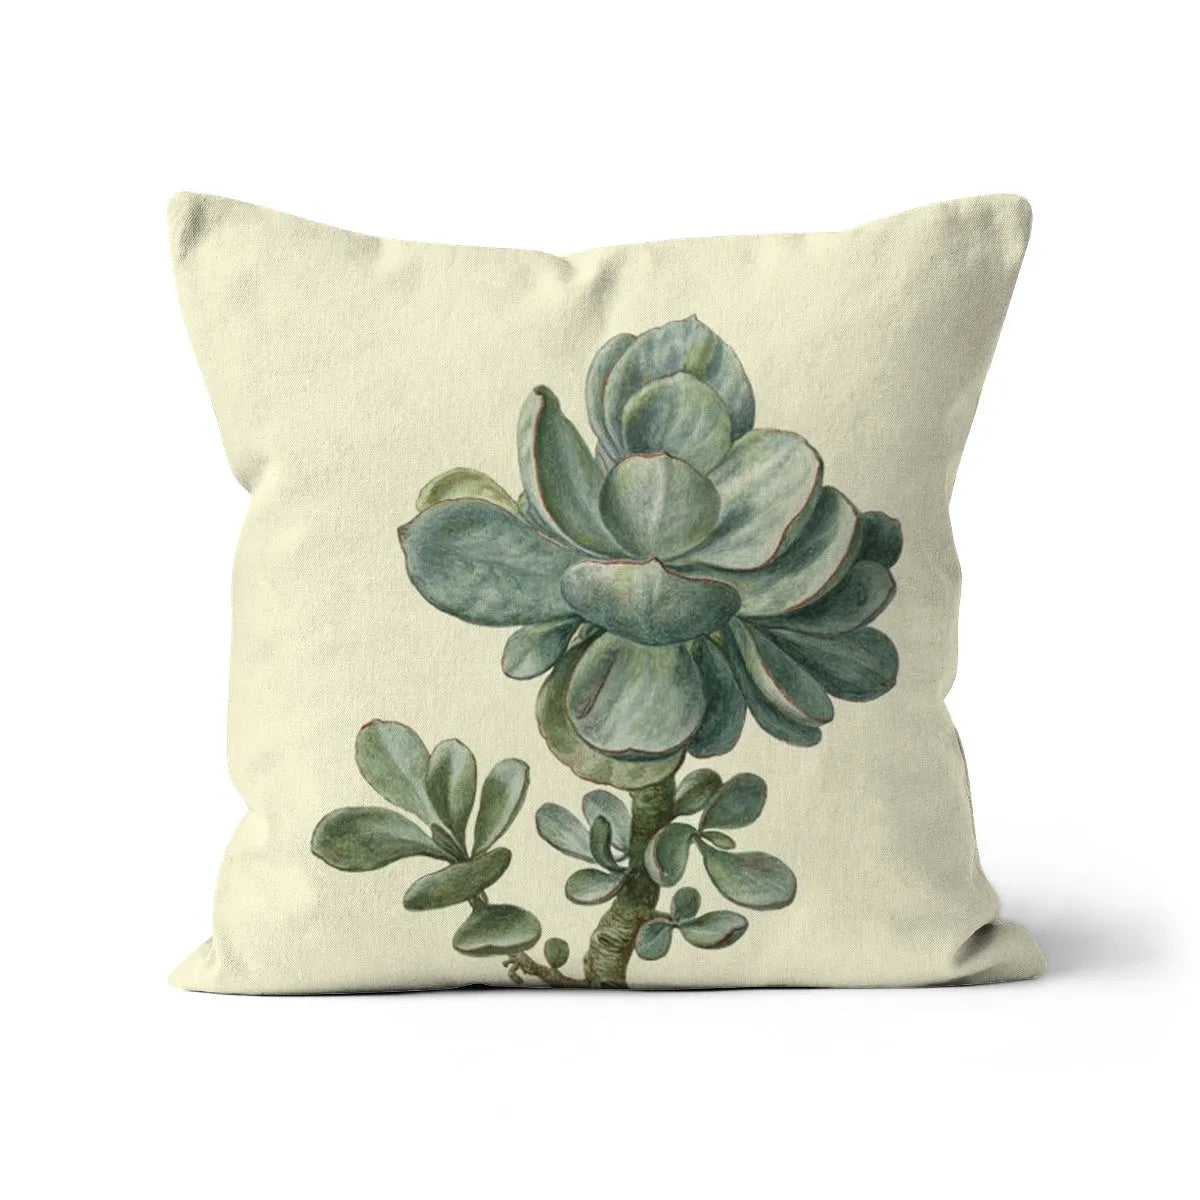 Little Green Man Cushion - Linen / 16’x16’ - Throw Pillows - Aesthetic Art